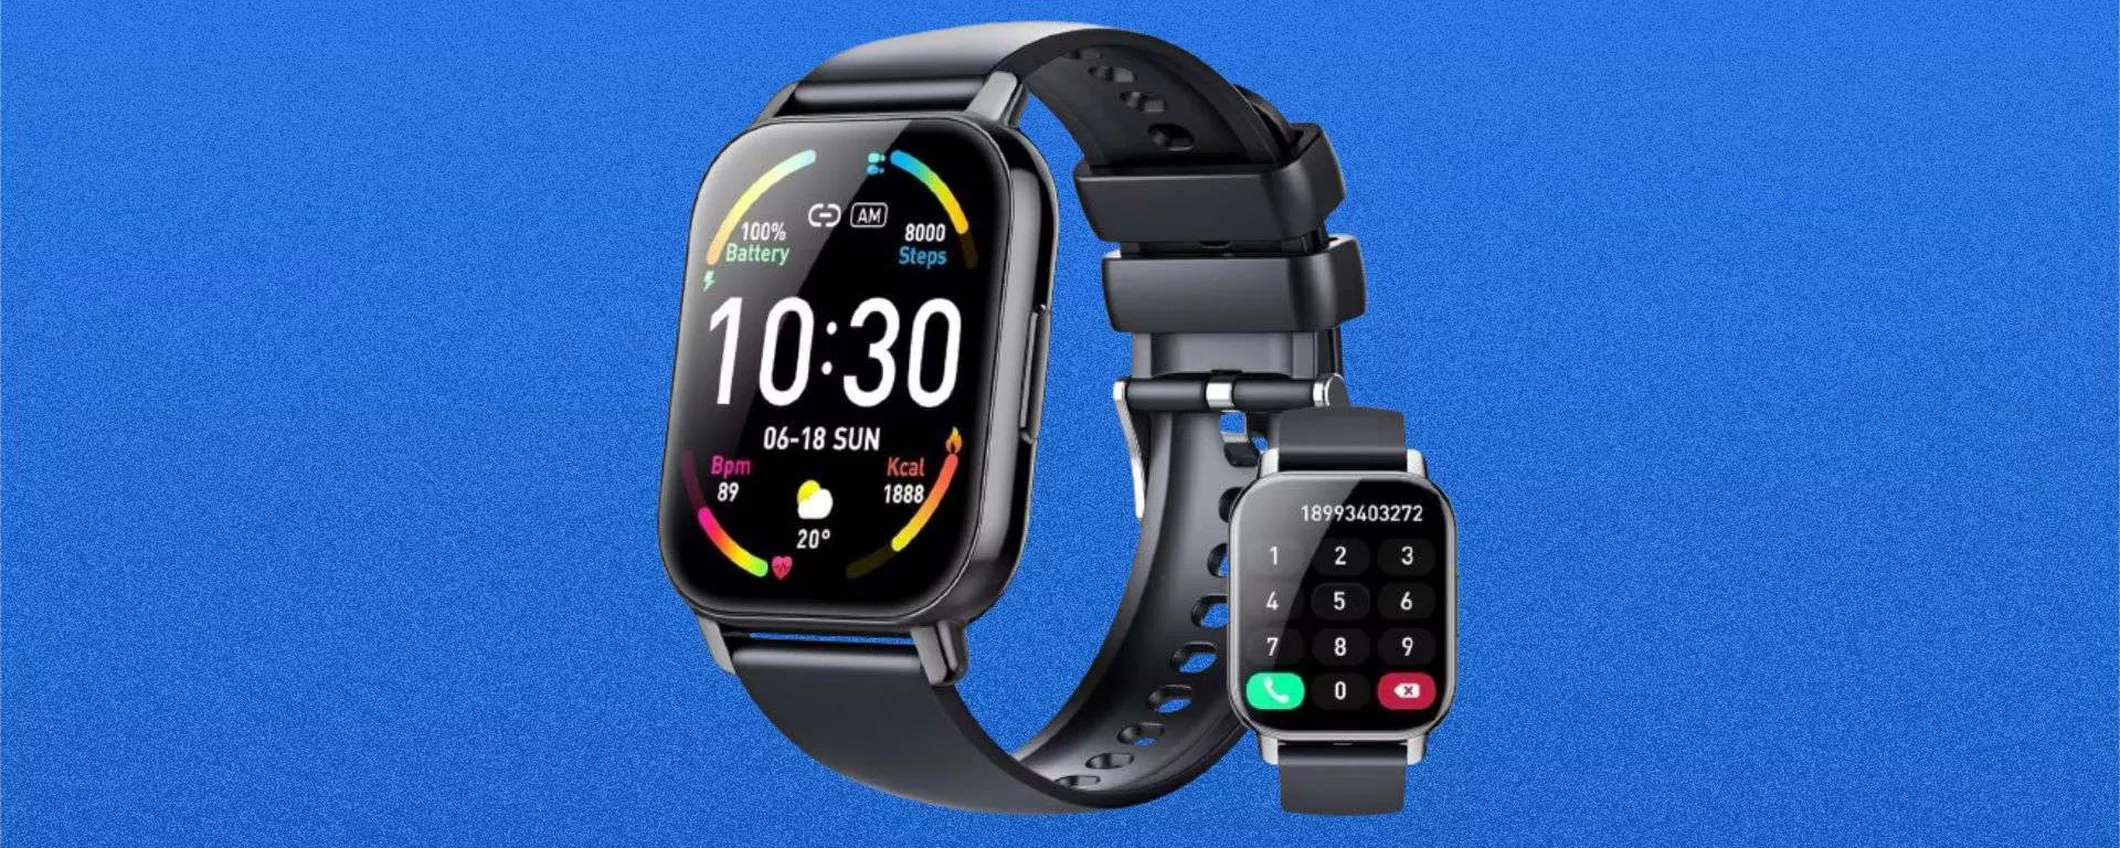 Smartwatch in offerta su Amazon, prezzo SCANDALOSO: tuo a soli 22€